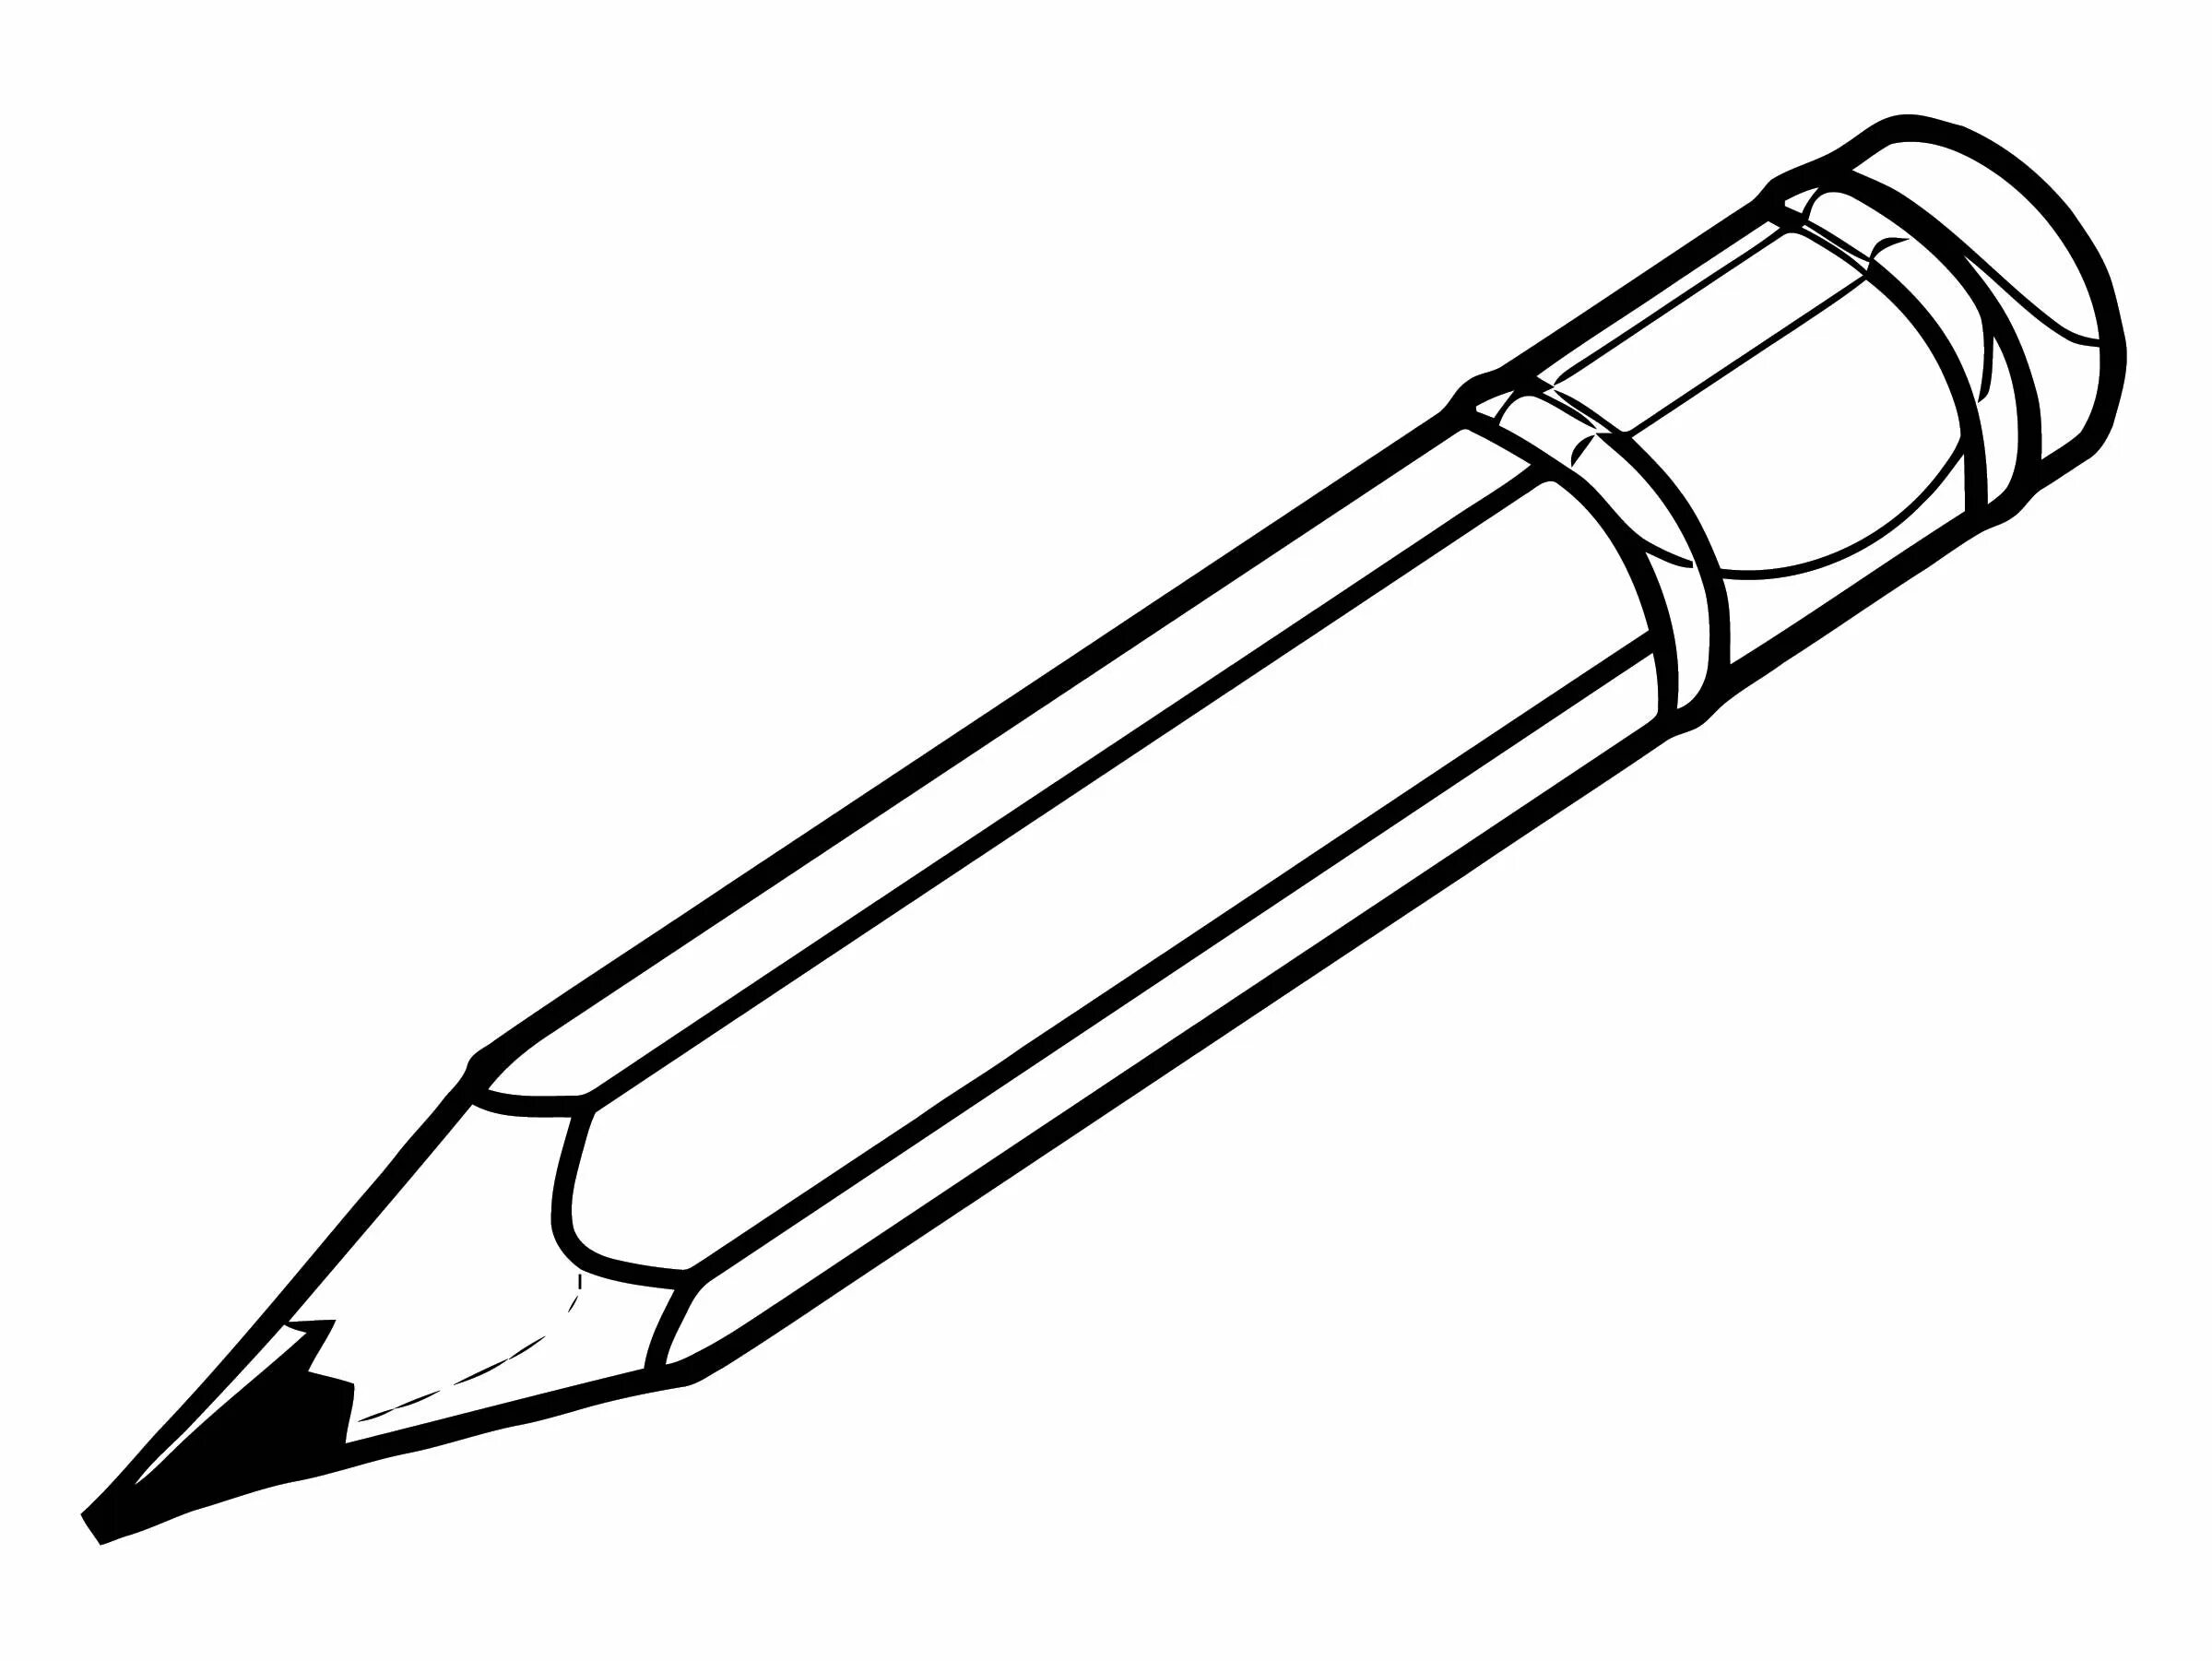 Ручка распечатать картинку. Ручка раскраска для детей. Раскраска с карандашами. Раскраска ручка шариковая. Карандаш раскраска для детей.